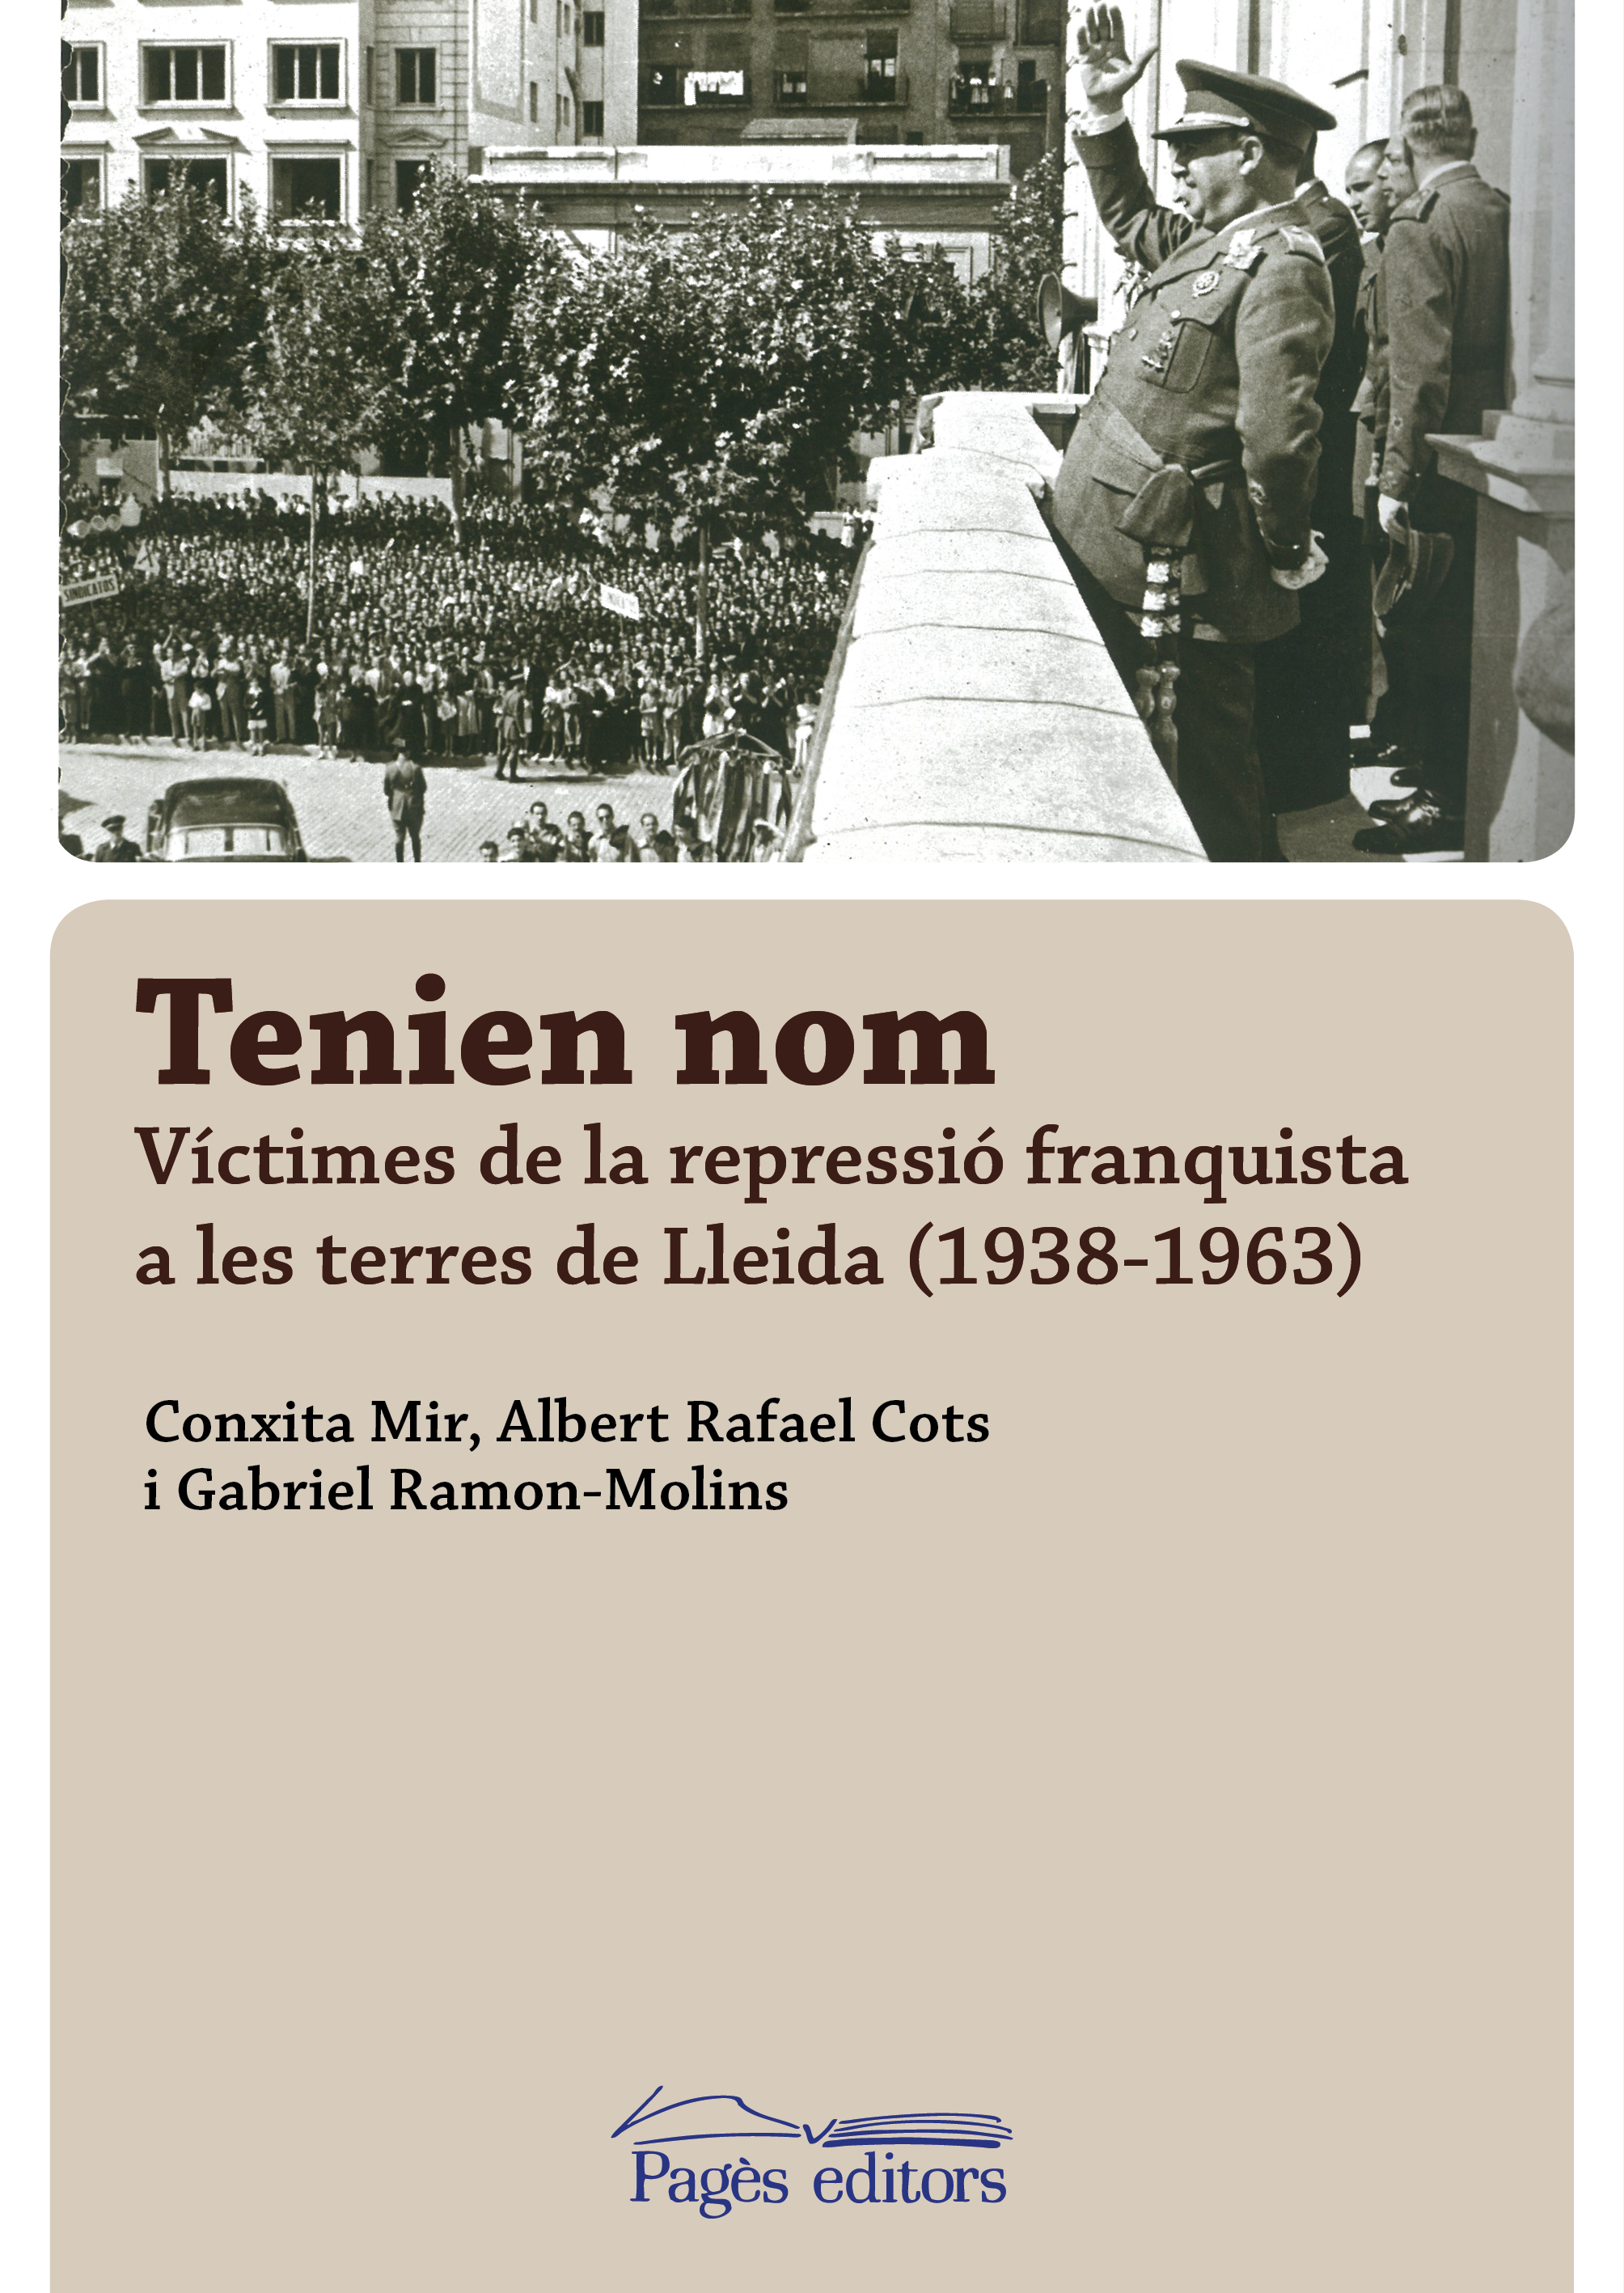 Publiquem el llibre  "Tenien nom", que recull el nom dels milers de persones represaliades a Lleida durant el Franquisme